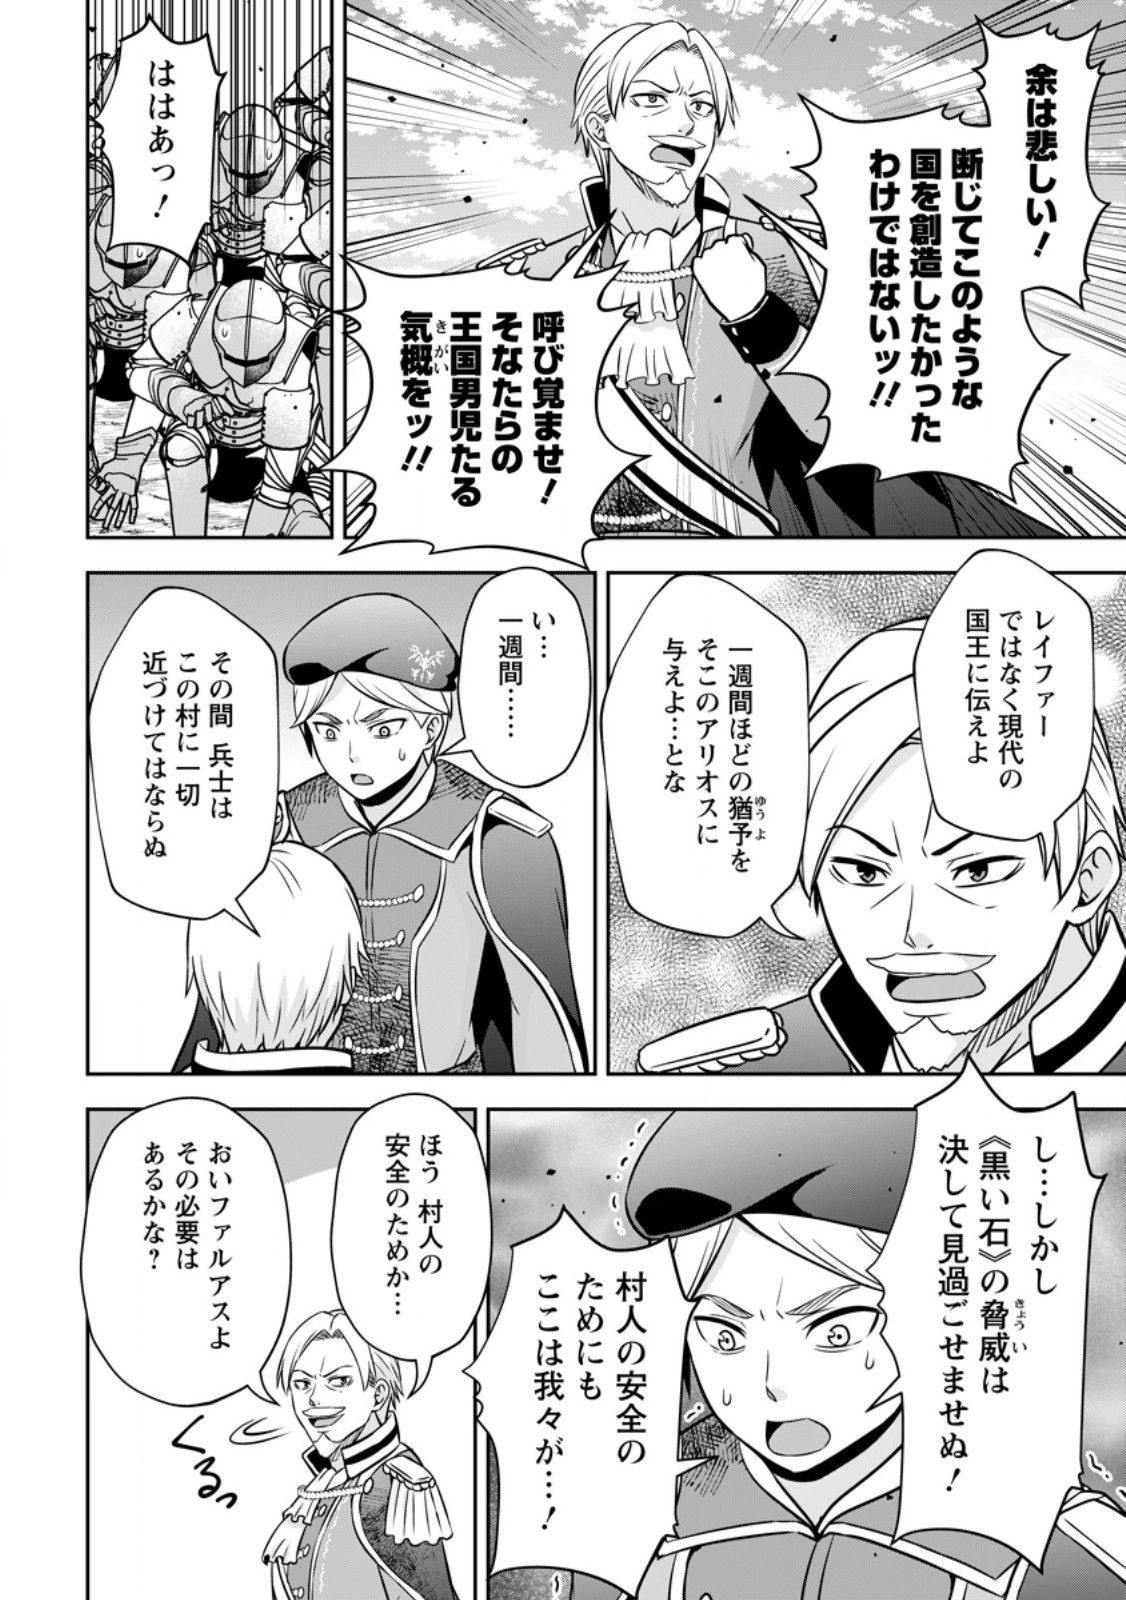 Oi, Hazure Skill dato Omowareteita Cheat Code Sousa ga Bakemono Sugiru ndaga (Tomokichi) - Chapter 17.2 - Page 2